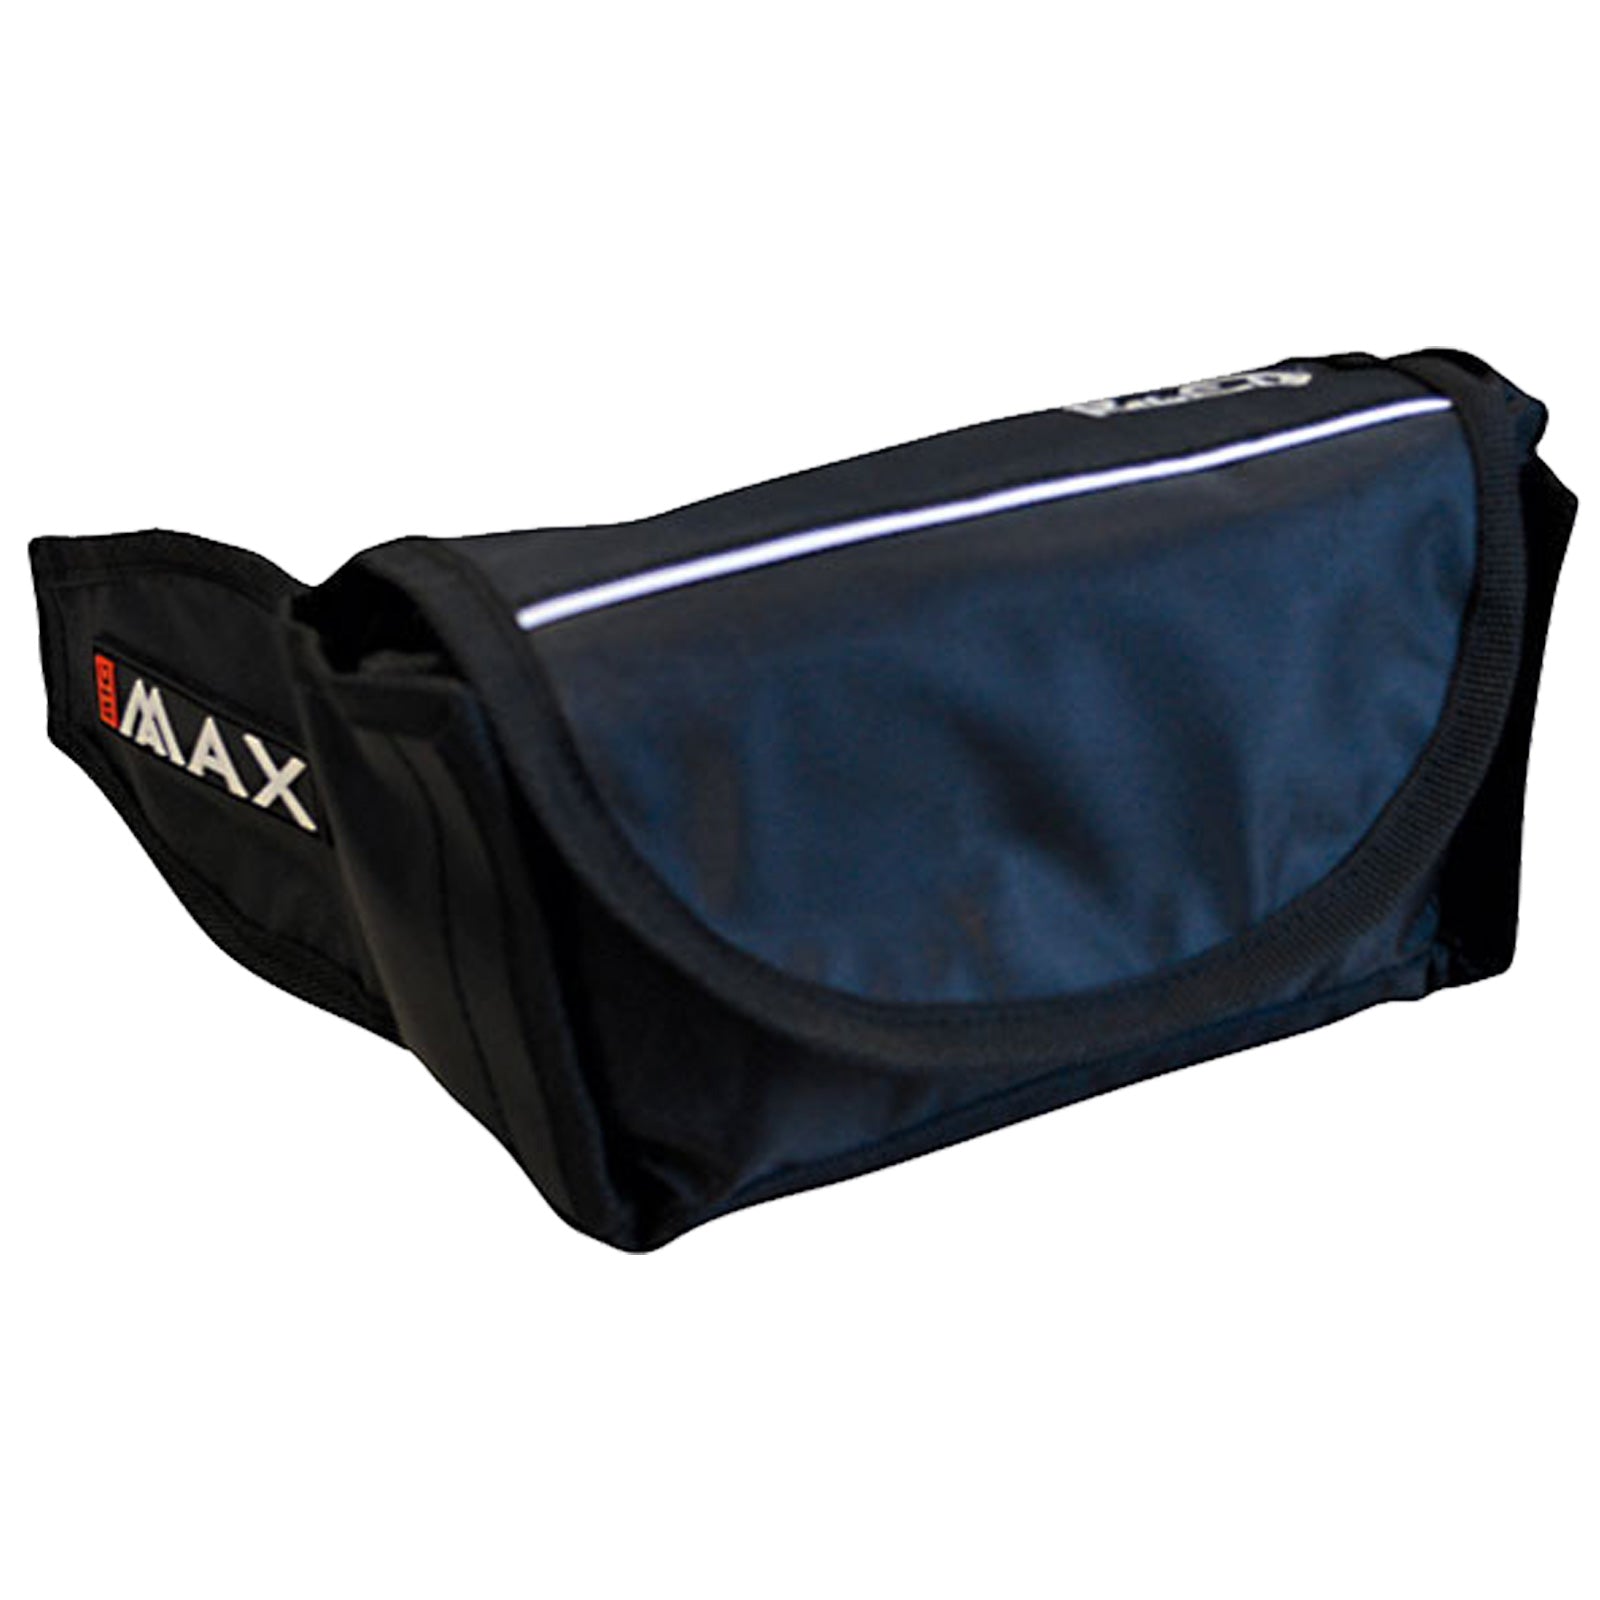 Big Max Rain Safe Golf Bag Cover